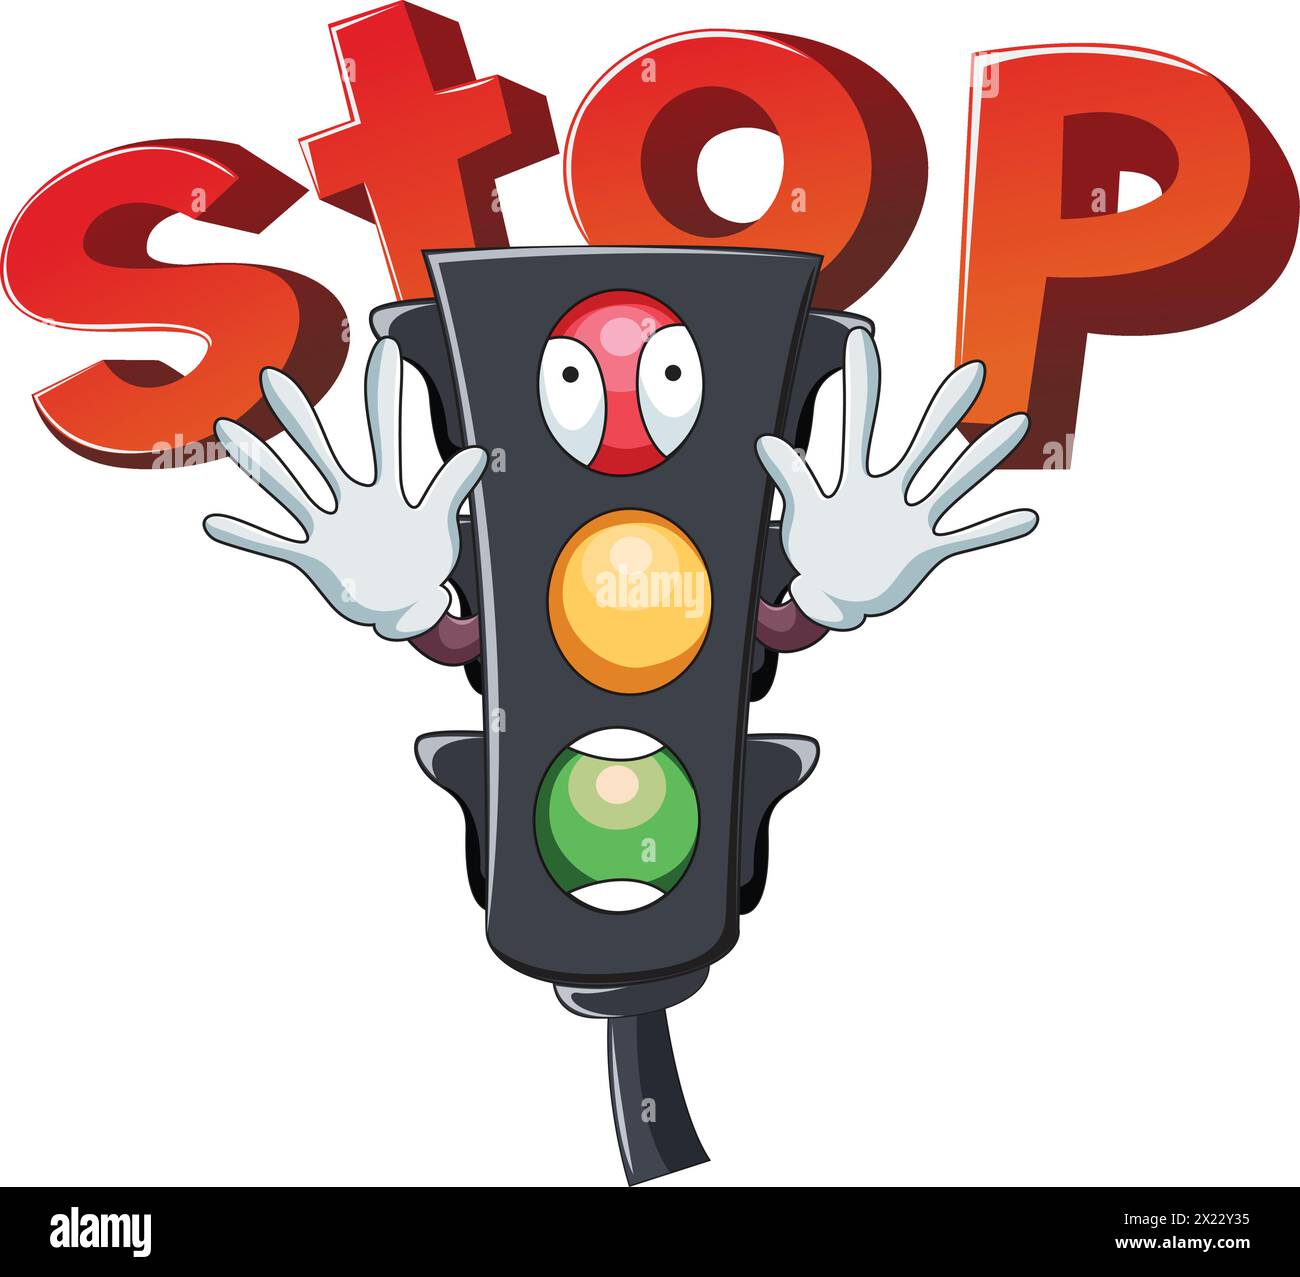 Illustrazione vettoriale che mostra i semafori in stile cartoni animati che indicano stop Illustrazione Vettoriale